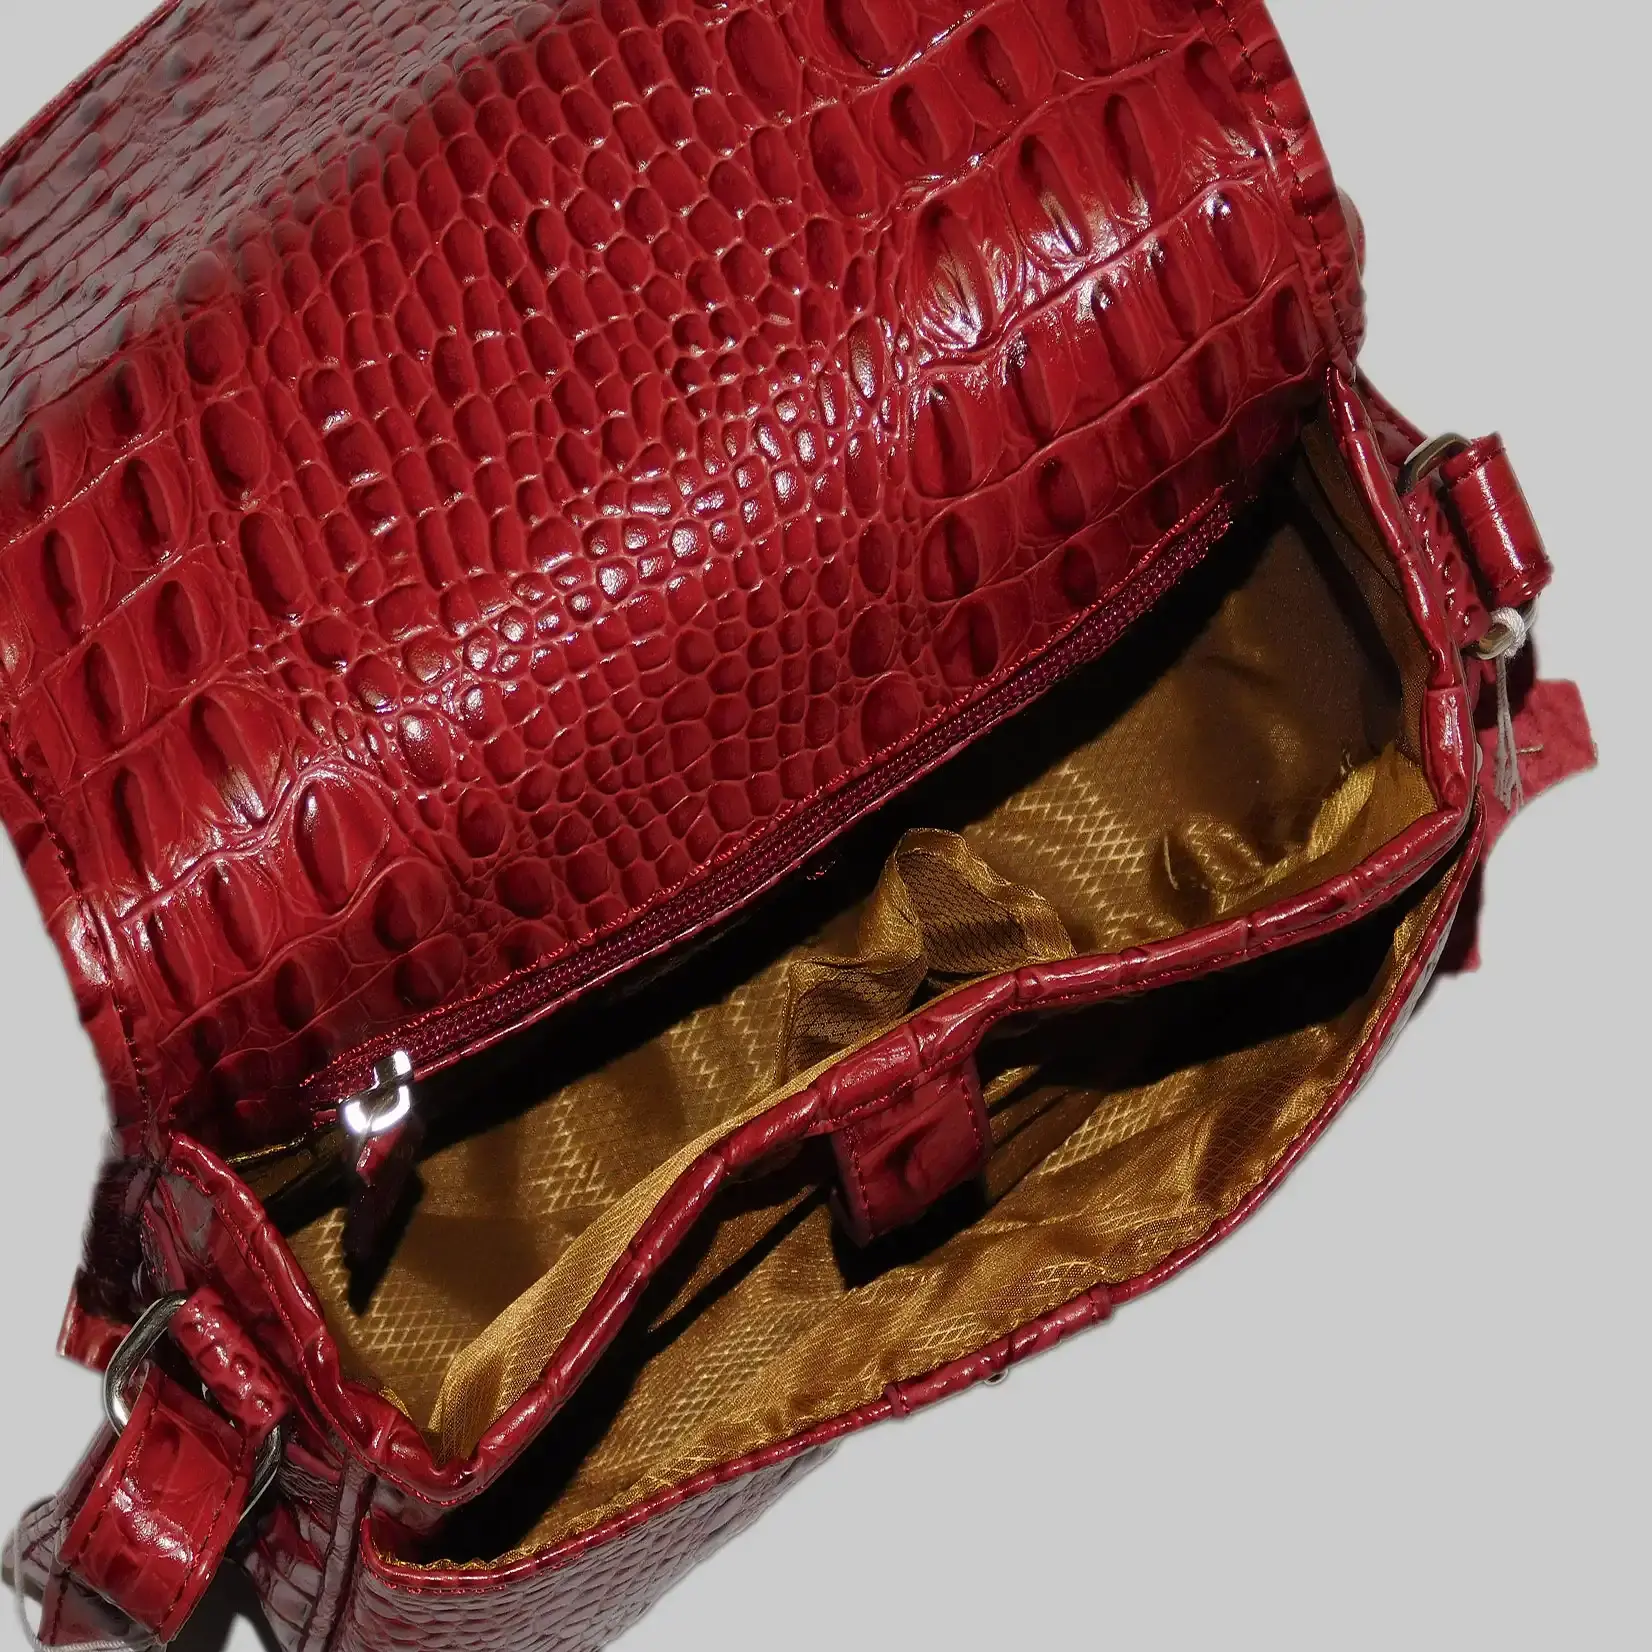 AIRFIELD Italy Design Umhängetasche Damen Leder - Rot - Croco Design - Schultertasche - Crossover - Druckknopfverschluss